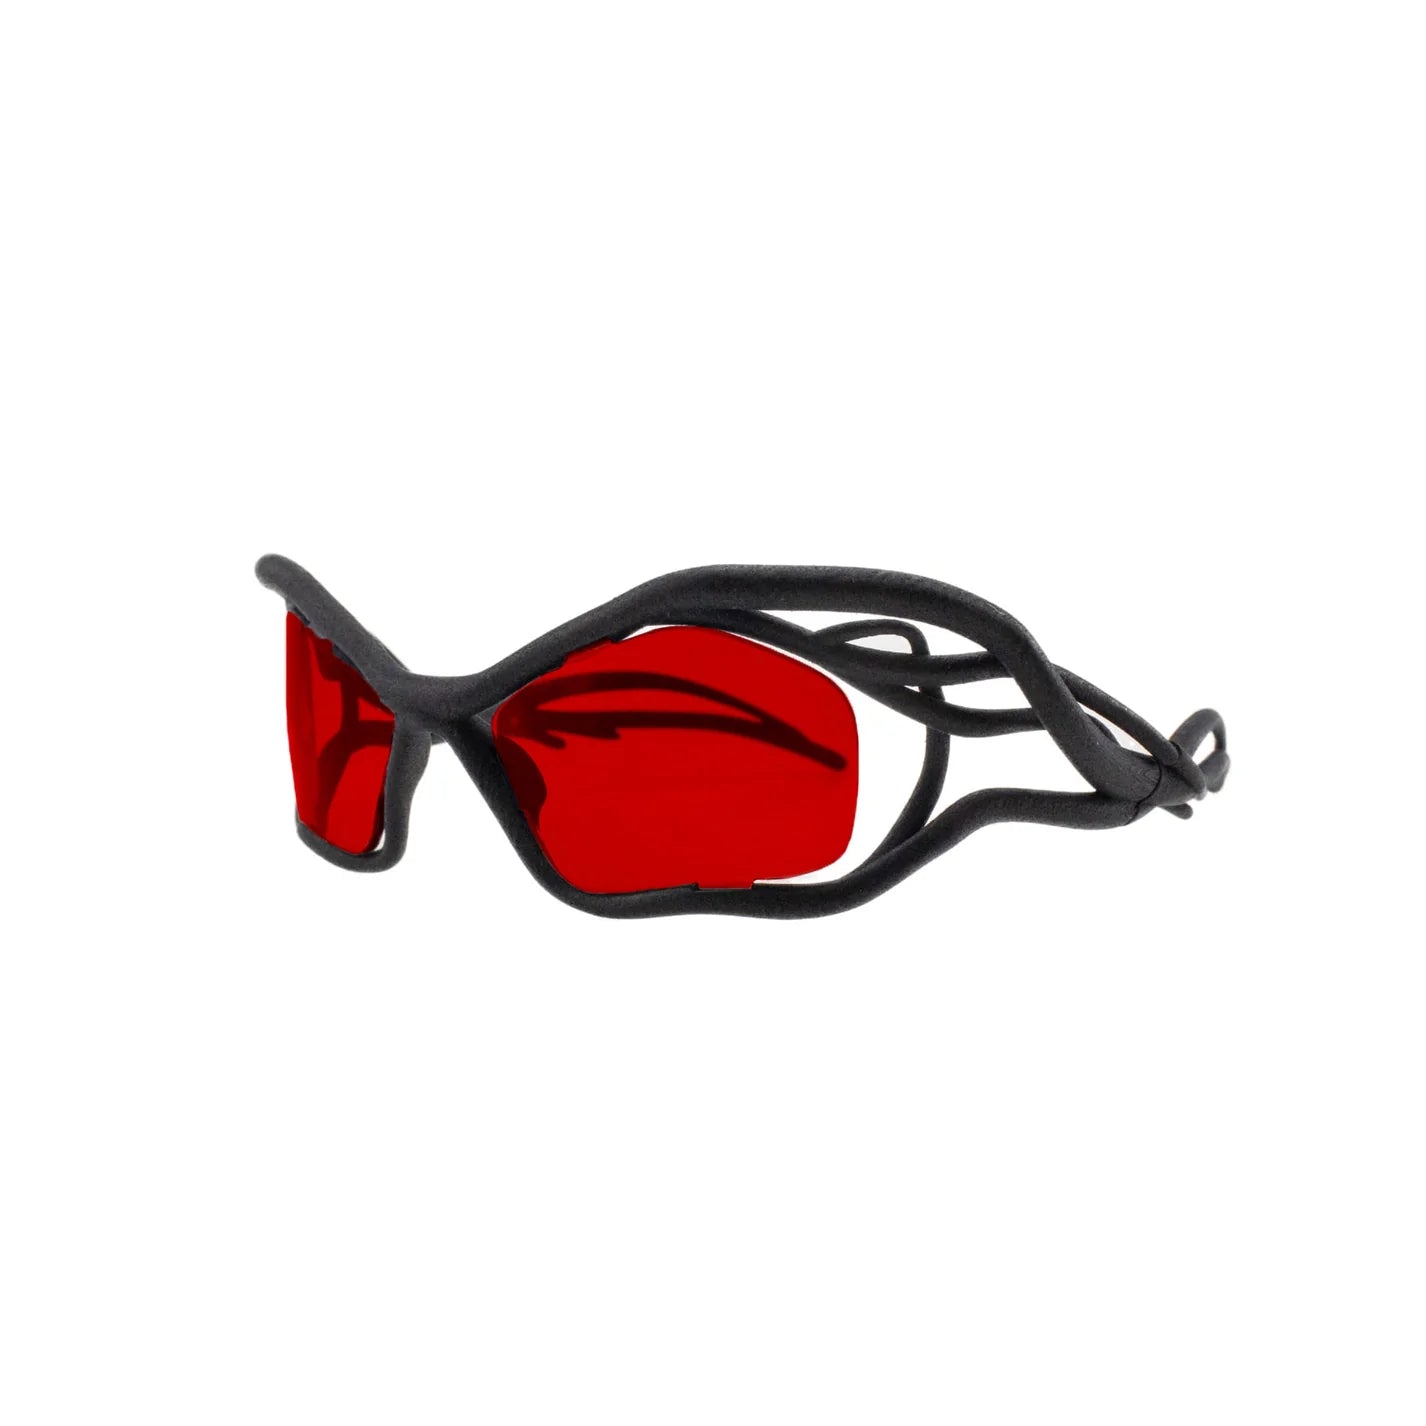 Red NFT Sunglasses